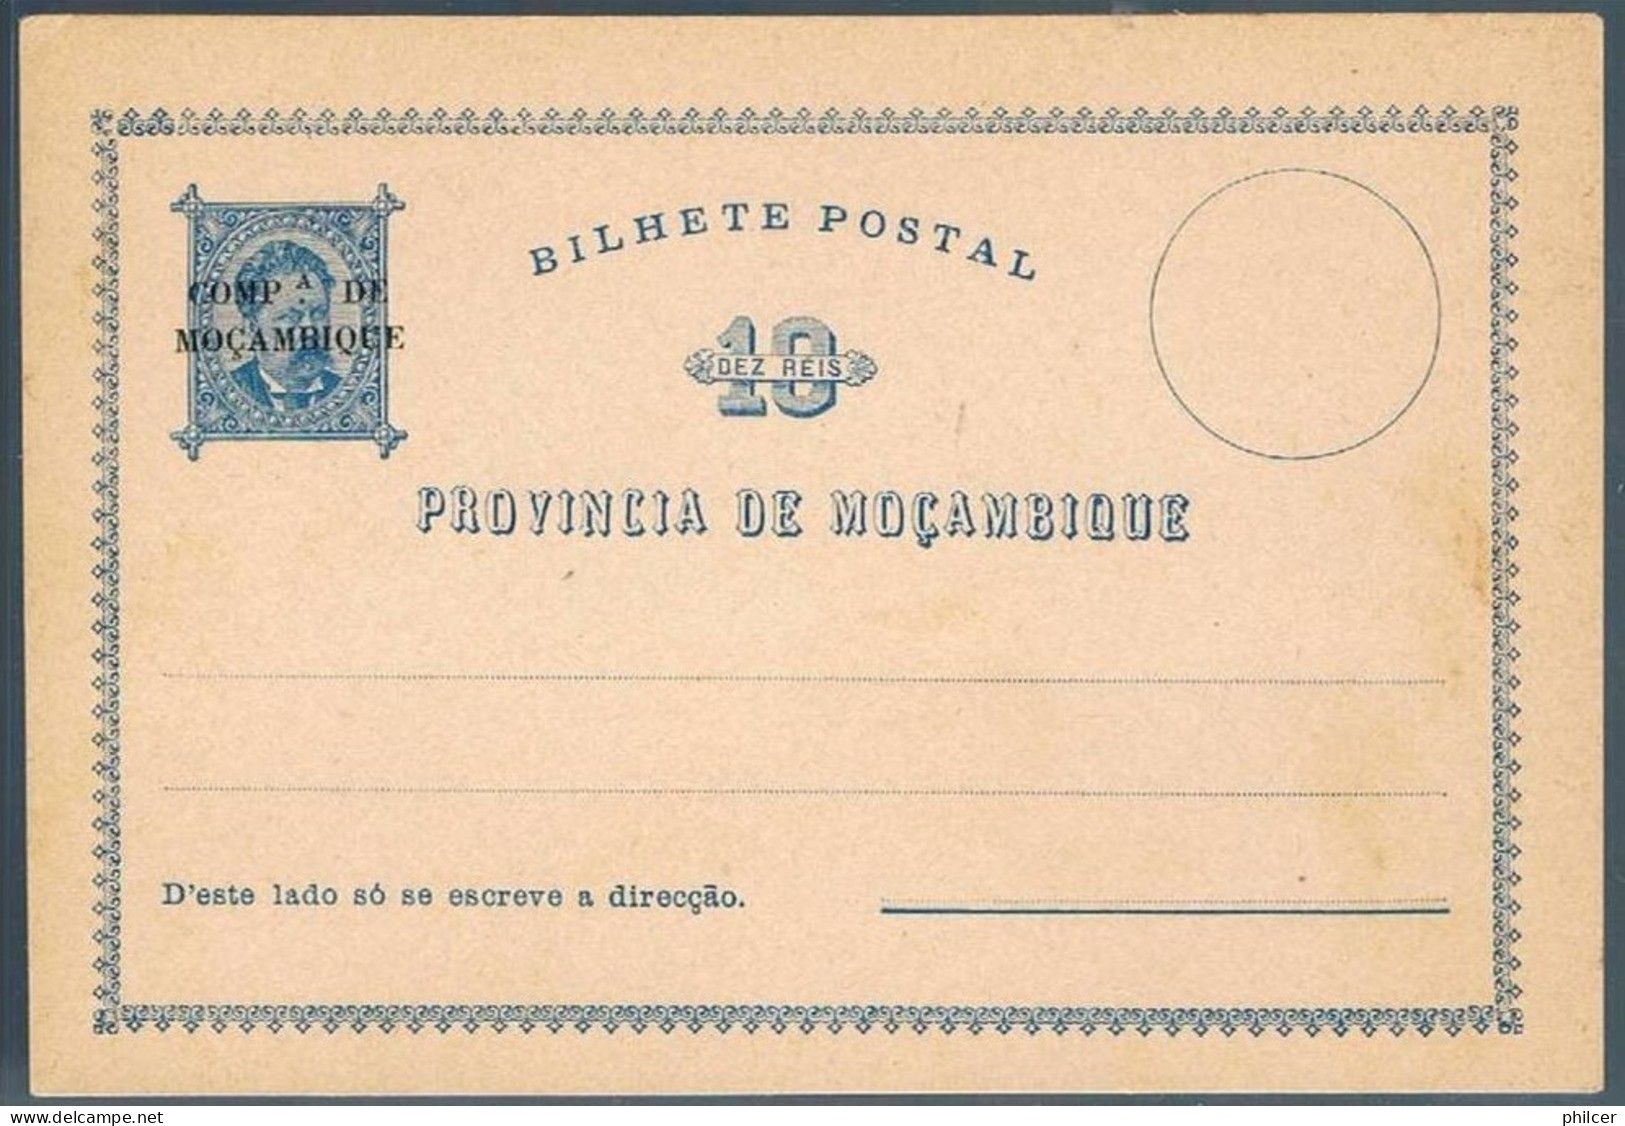 Companhia De Moçambique, Bilhete Postal - Mosambik